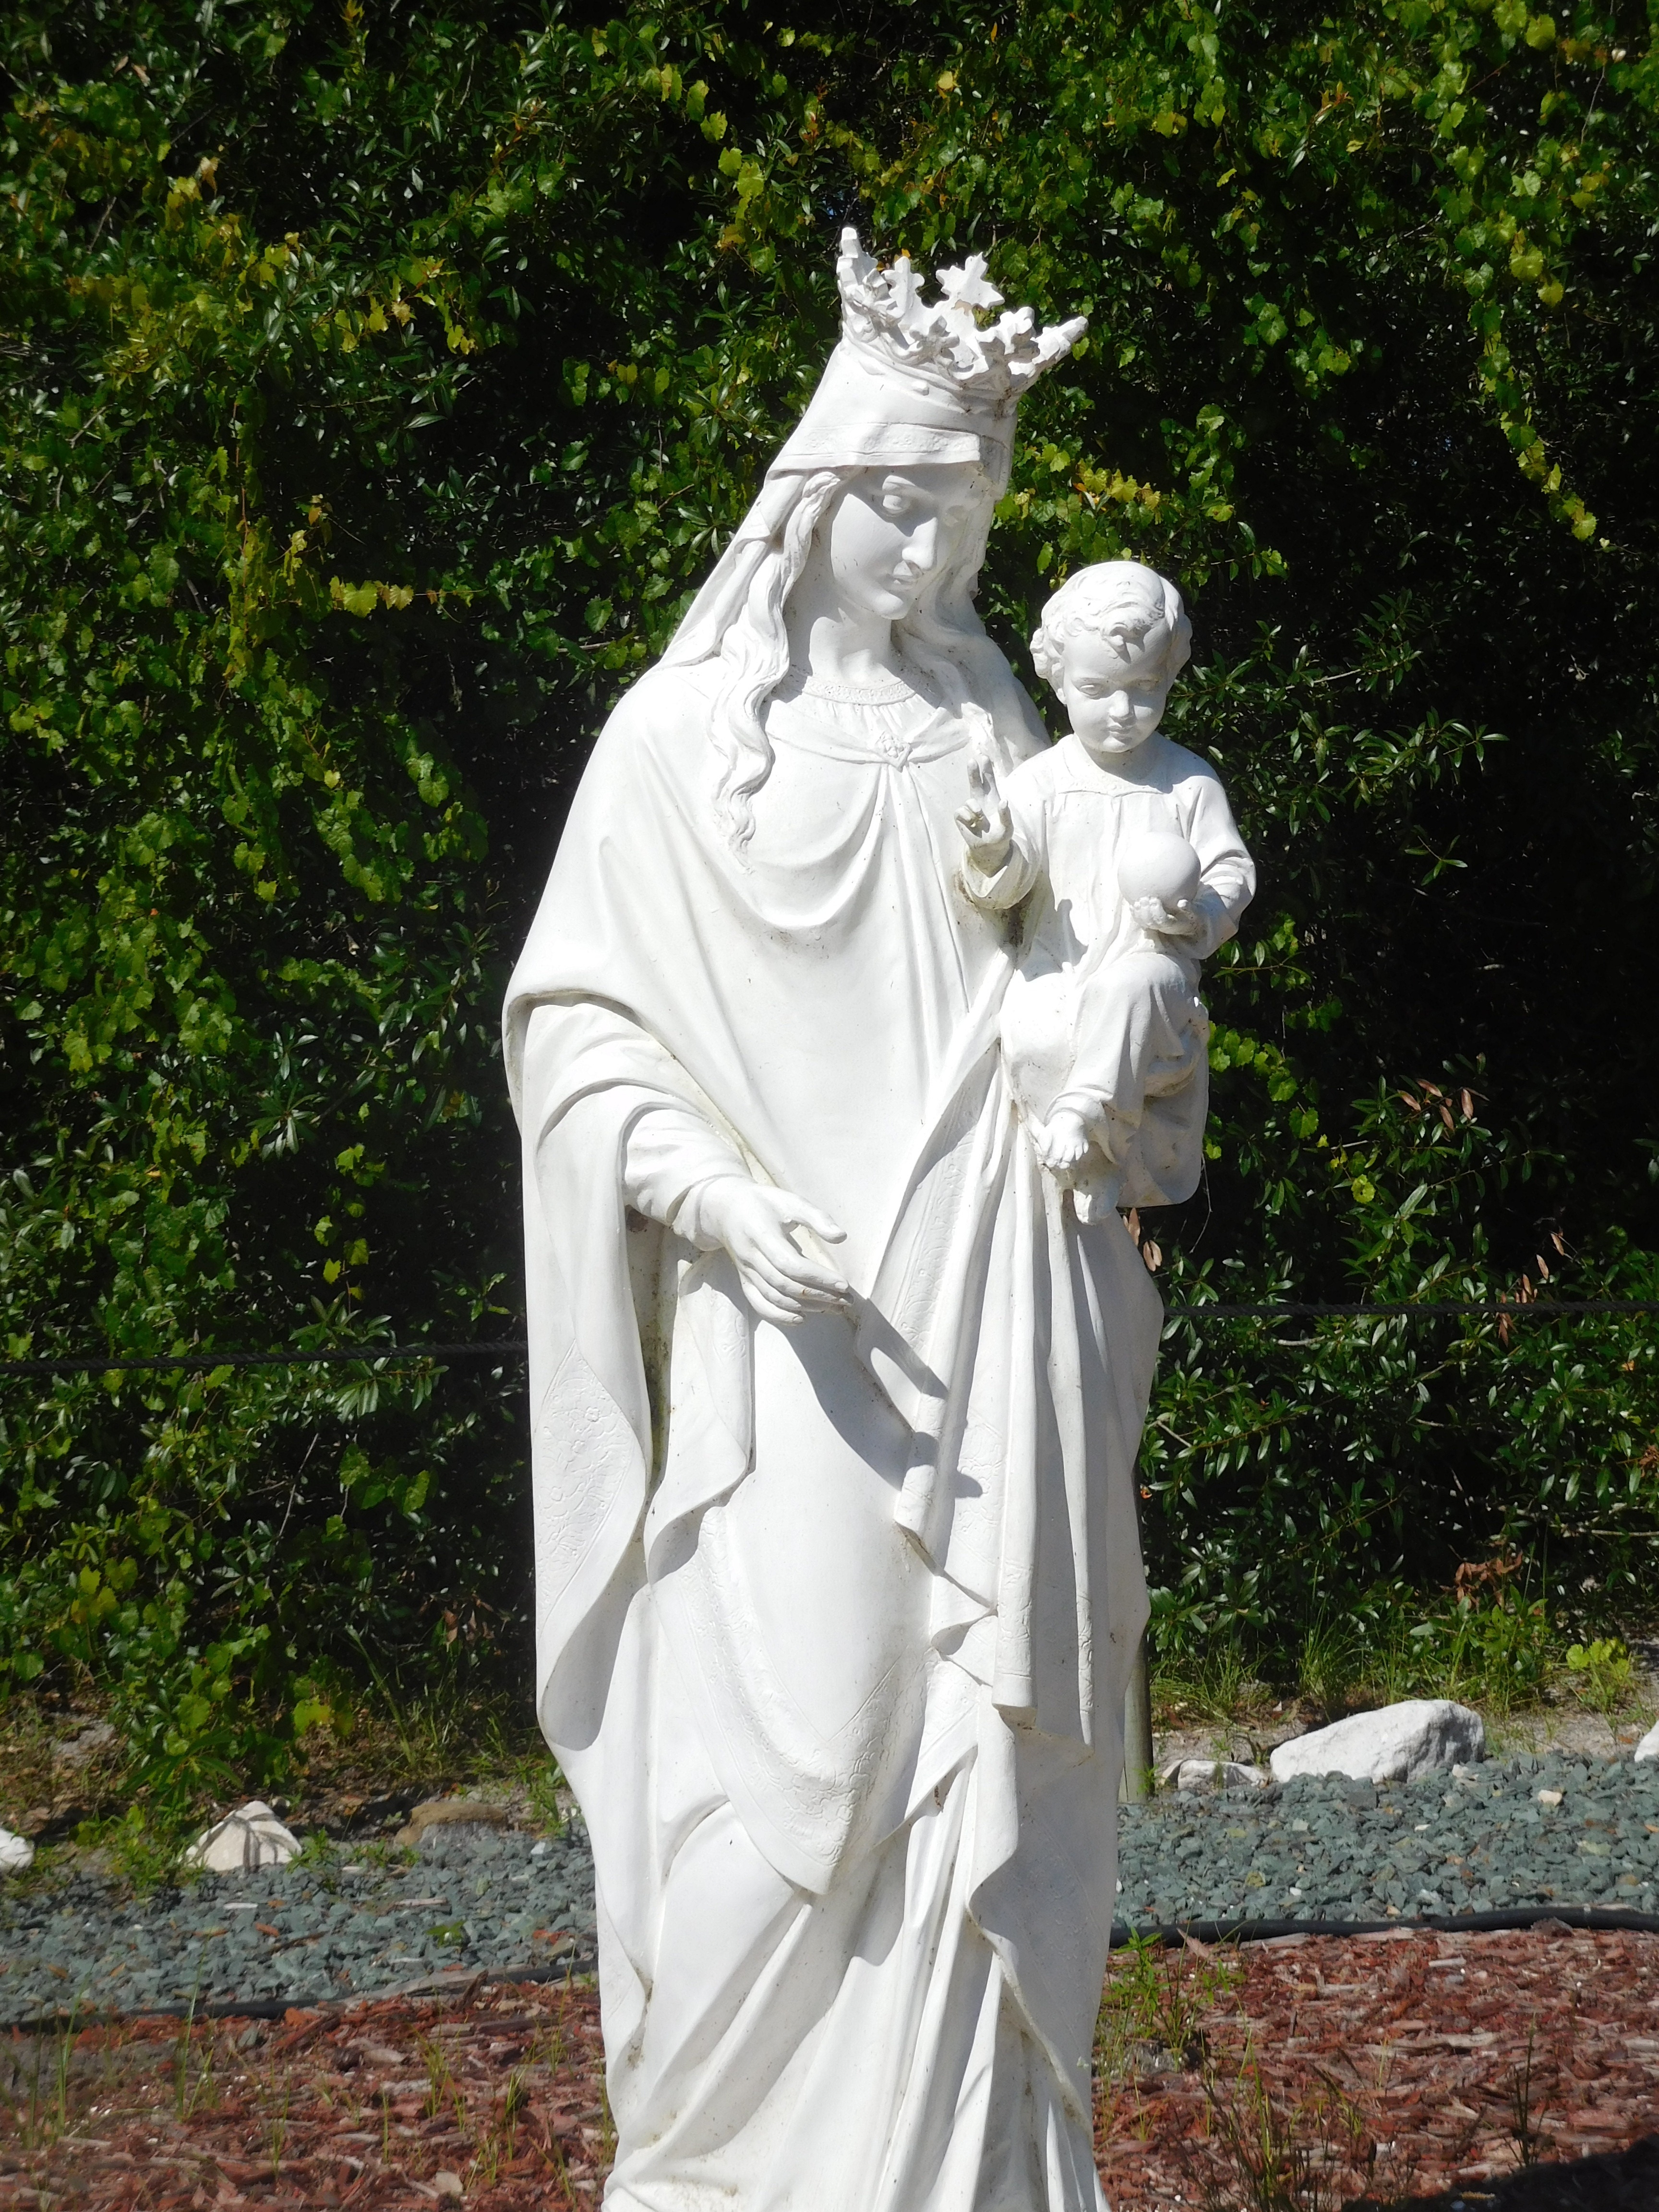 religious statue